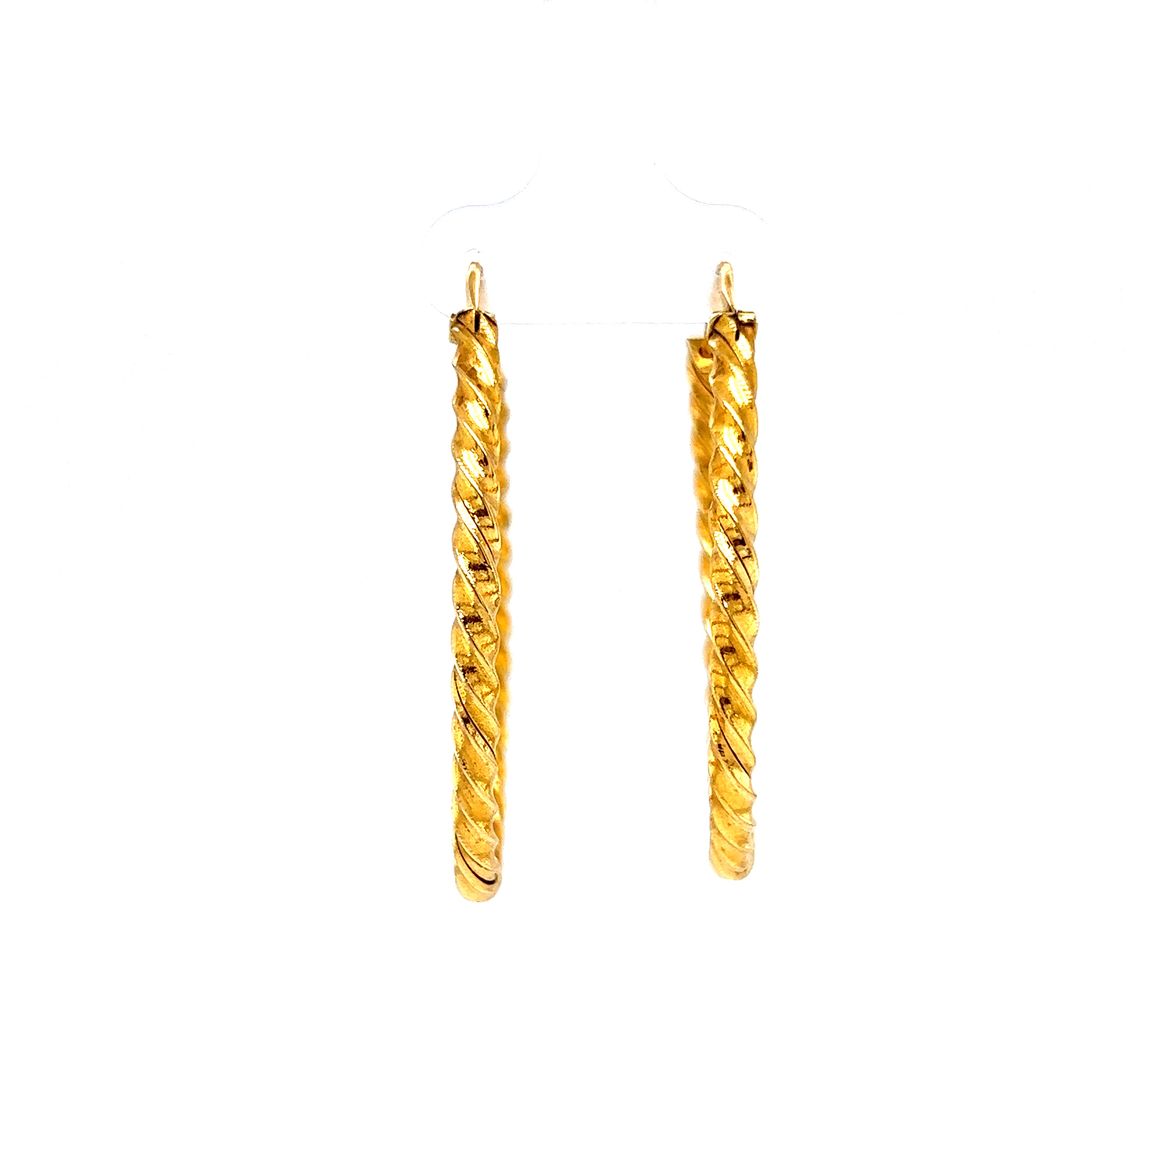 Twisted Oval Hoop Earrings in 18k Yellow Gold